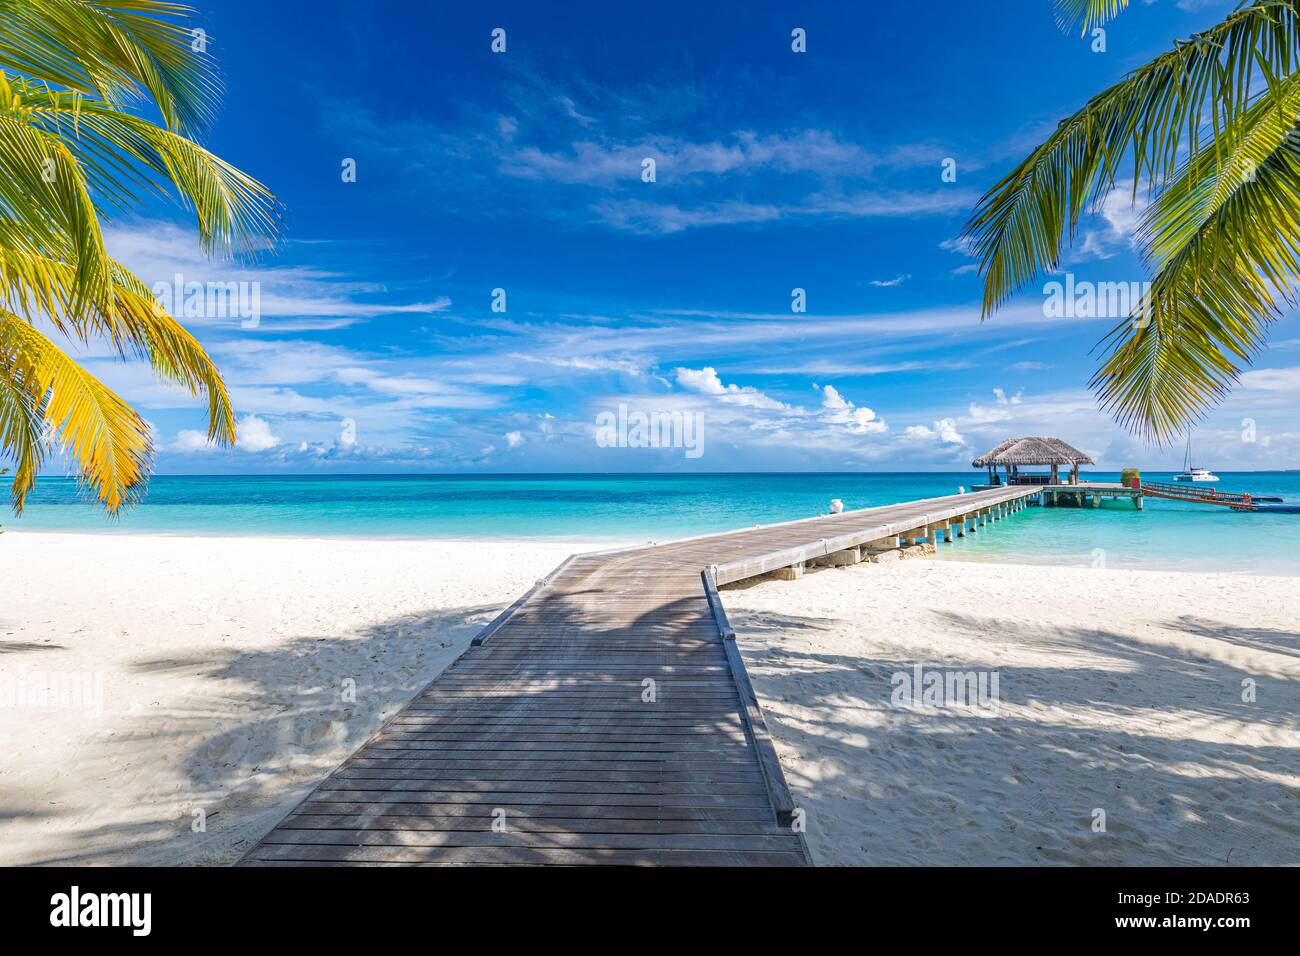 Plage tropicale, Maldives. Chemin de jetée vers l'île paradisiaque tranquille. Palmiers, sable blanc et mer bleue, vacances d'été parfaites vacances paysage vacances Banque D'Images